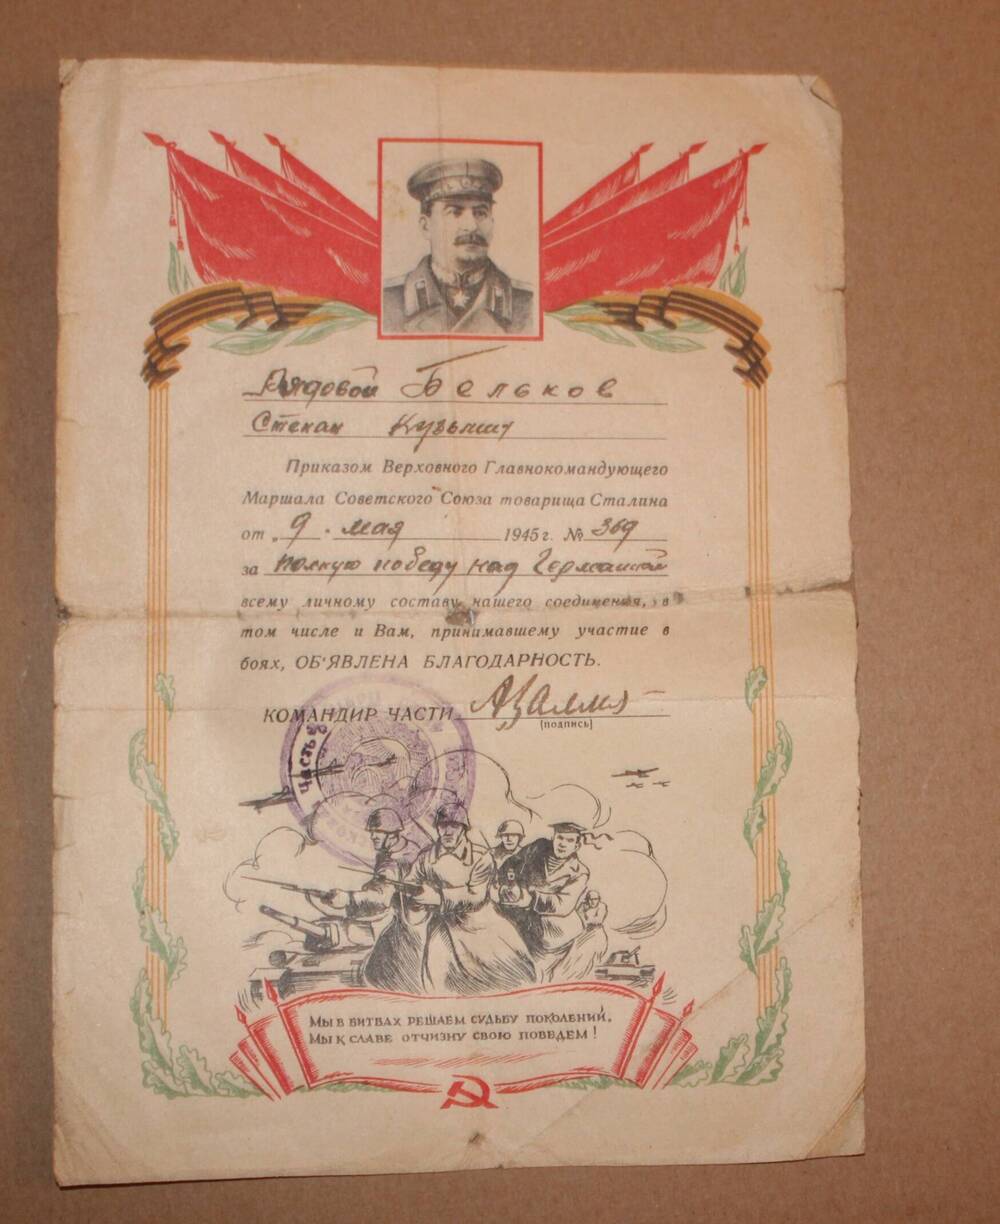 Благодарность, объявленная приказом  Верховного Главнокомандующего Маршала СССР т. Сталина  от 9 мая 1945 г.№369 рядовому Белькову С.К.